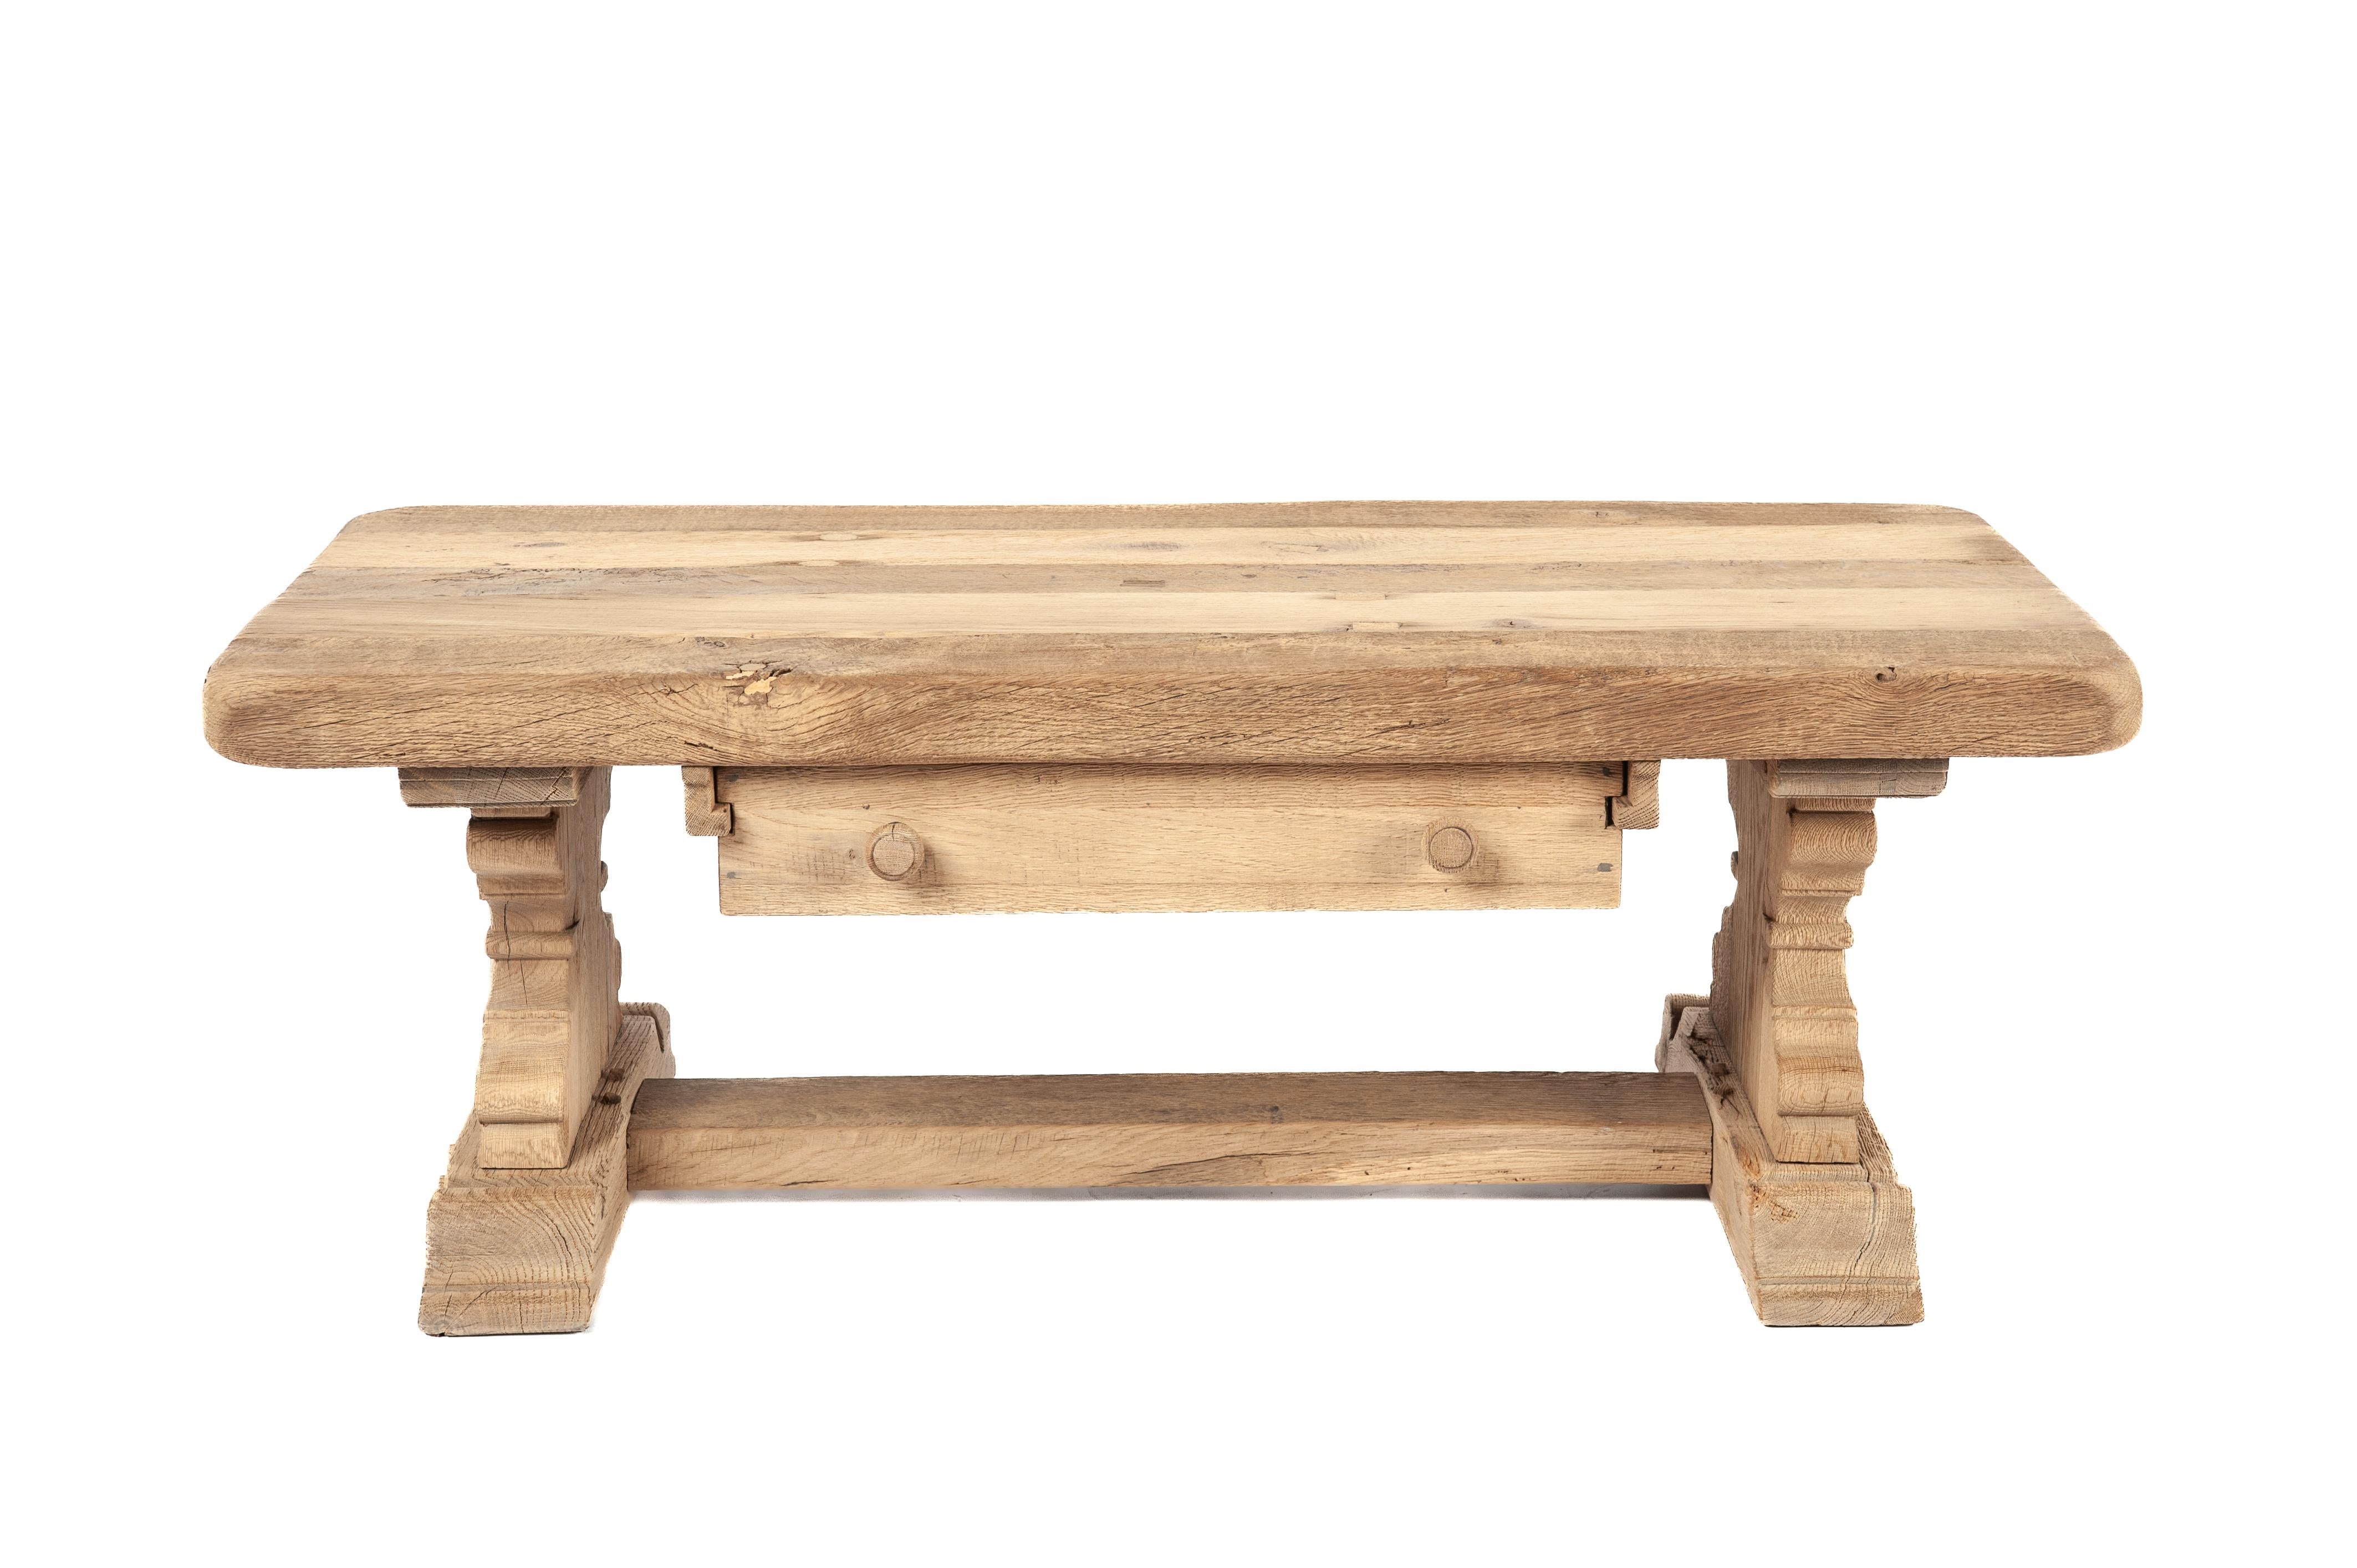 Nous vous proposons ici une magnifique table basse vintage, méticuleusement fabriquée à partir de bois de chêne récupéré datant des années 1960. Cette pièce rustique a été fabriquée par l'atelier de meubles Piet Rombouts & Sons, un héritage que